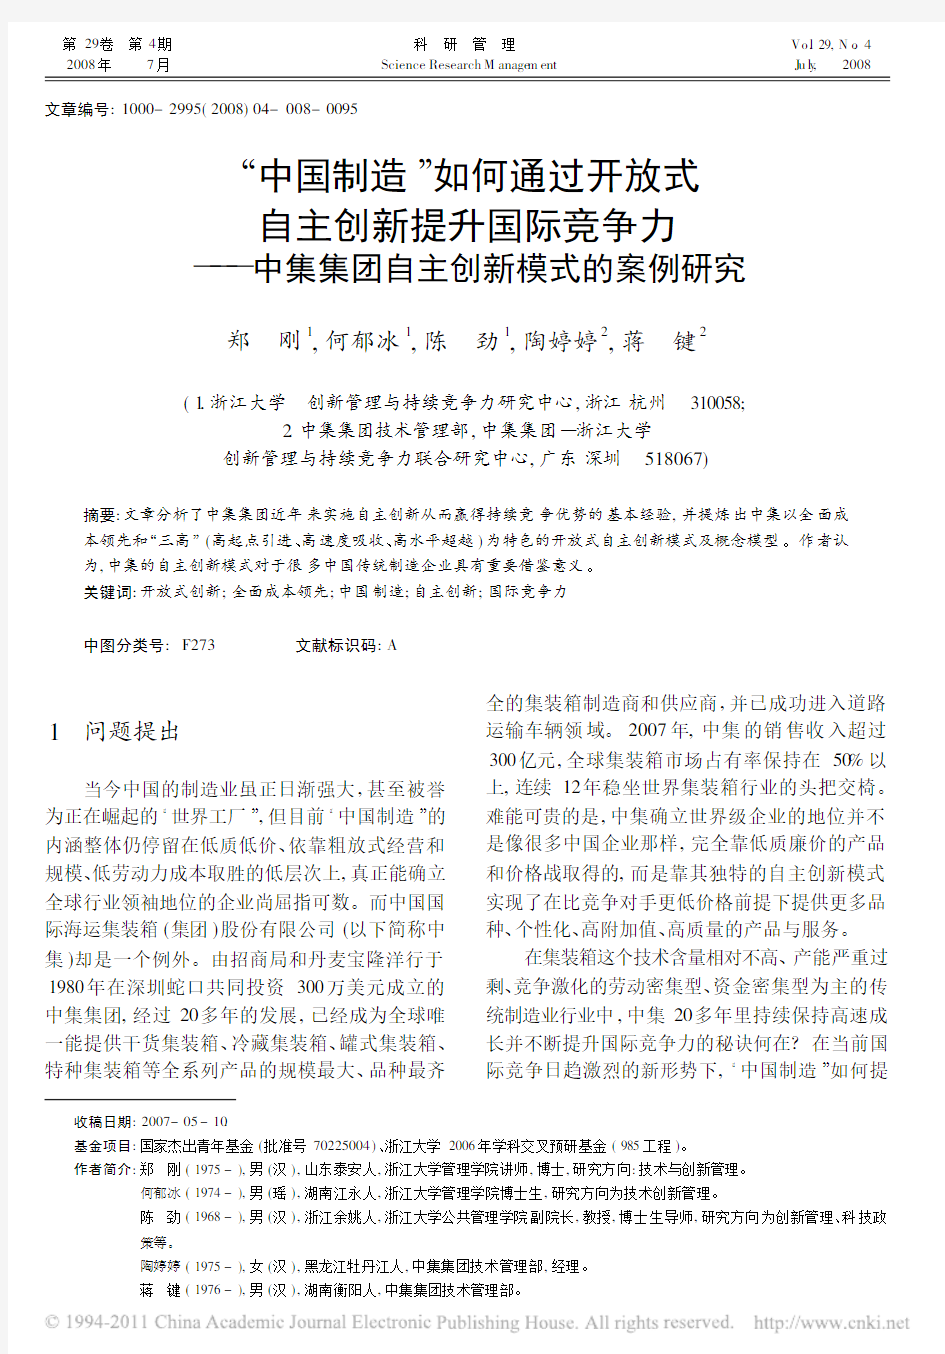 (2008科研管理)中国制造_如何通过开放式自主创新提升国际竞争力_中集集团自主创新模式的案例研究